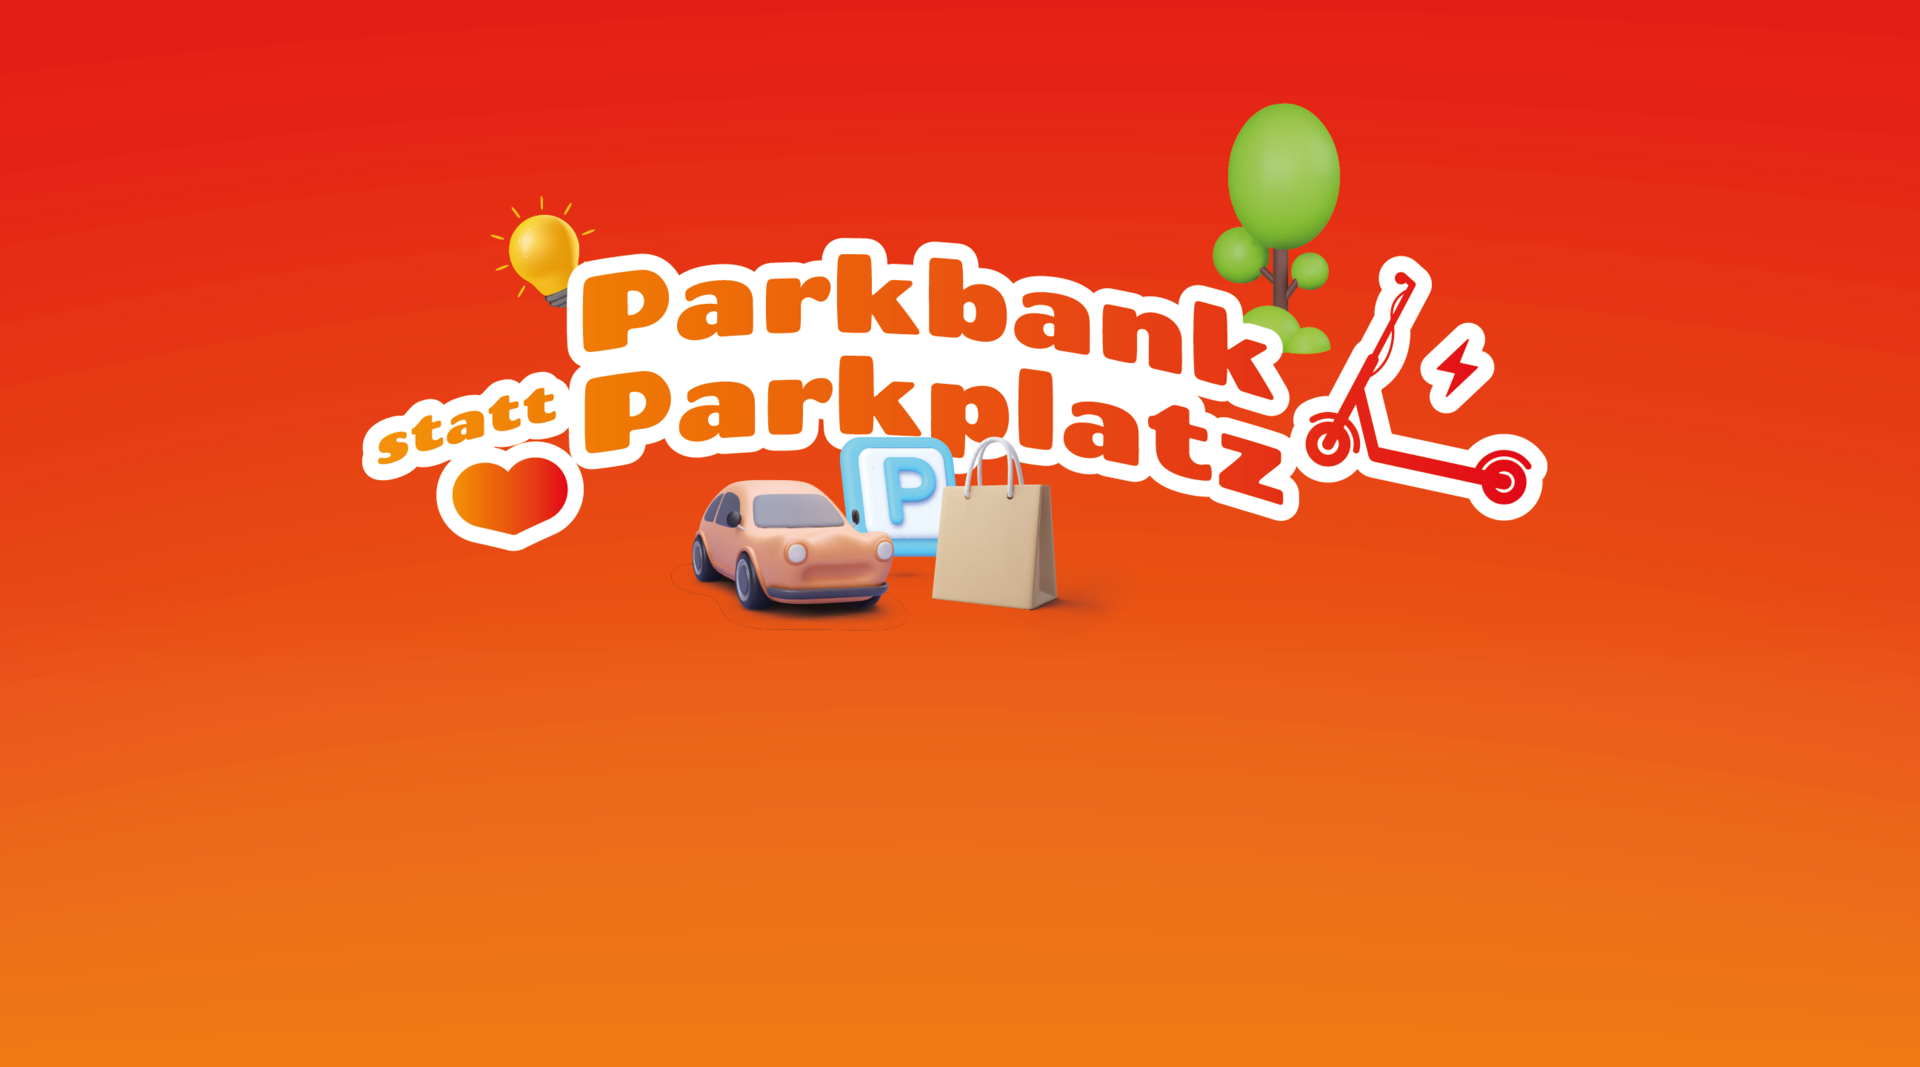 Grafik zum #mobilove-Fact Parkbank statt Parkplatz, rot-gelber Farbverlauf im Hintergrund, darauf verschiedene Symbole wie Autos und Bäume und der Schriftzug.